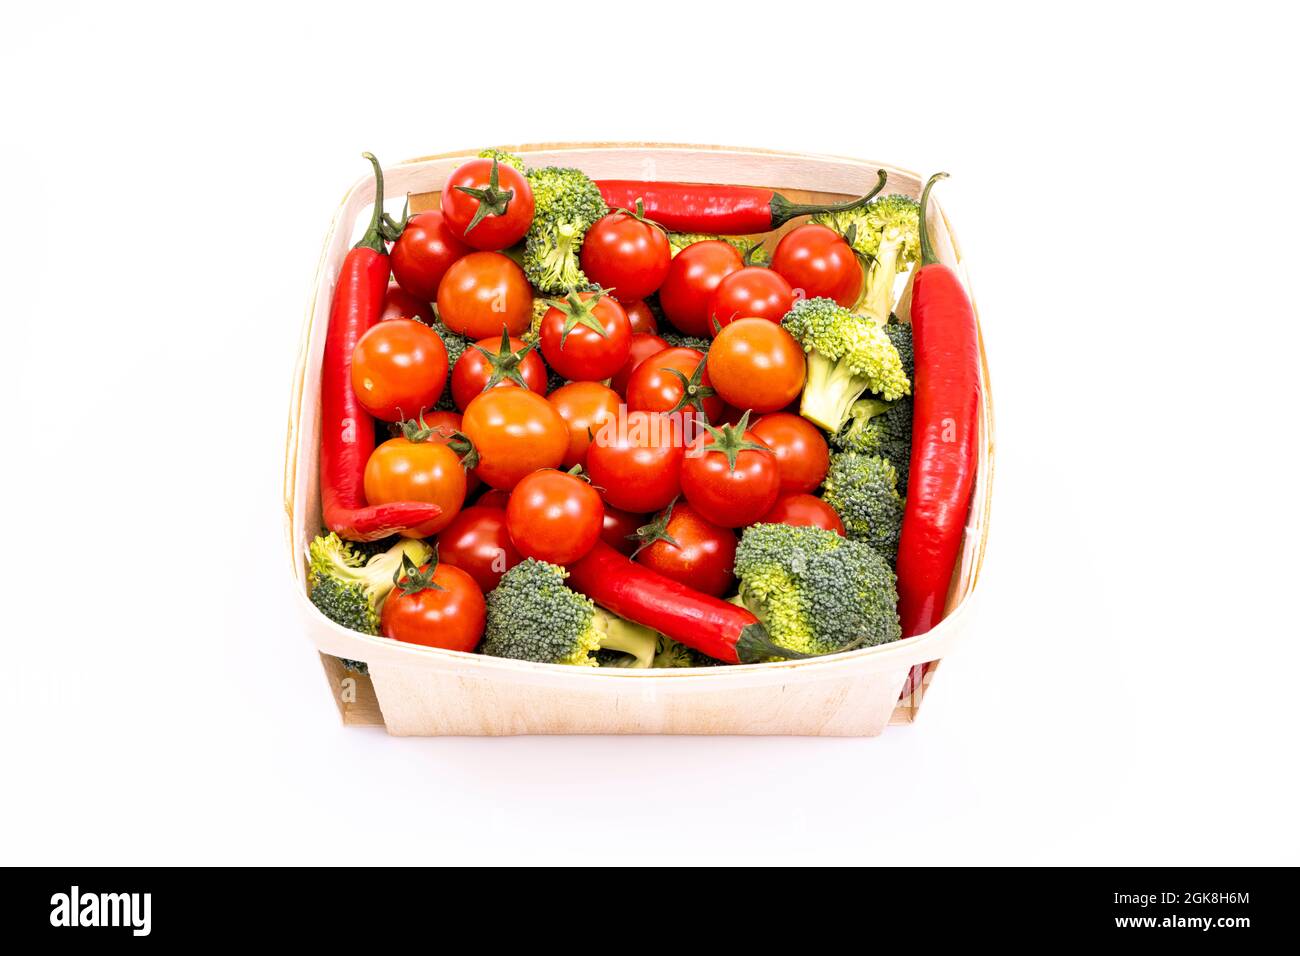 Dünnes Holztablett mit großen Kirschtomaten, Brokkoli-Stücken und roten Chili-Paprika auf weißem Hintergrund Stockfoto